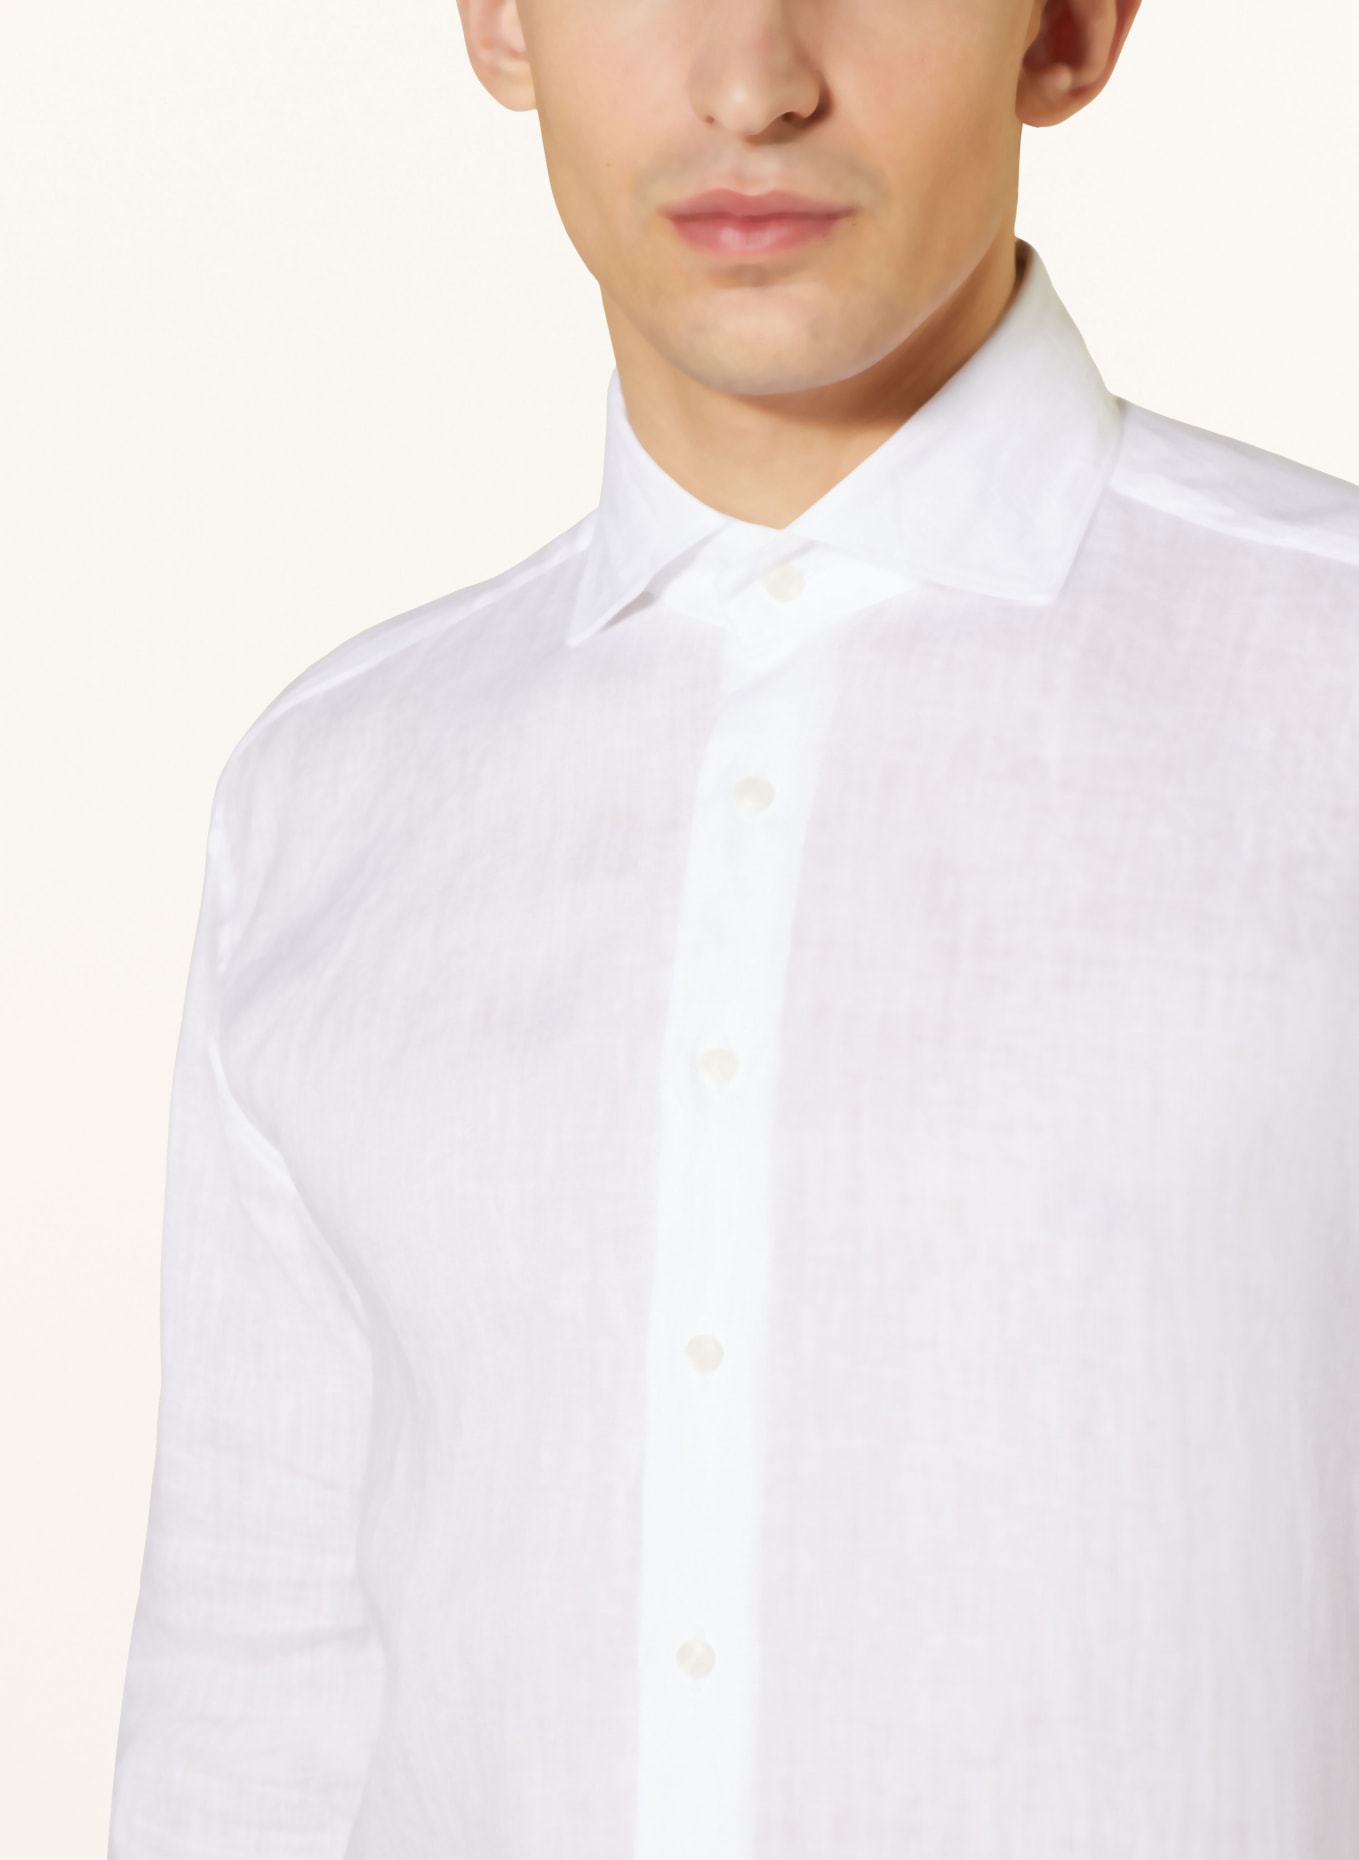 ARTIGIANO Leinenhemd Classic Fit, Farbe: 1 uni white (Bild 4)